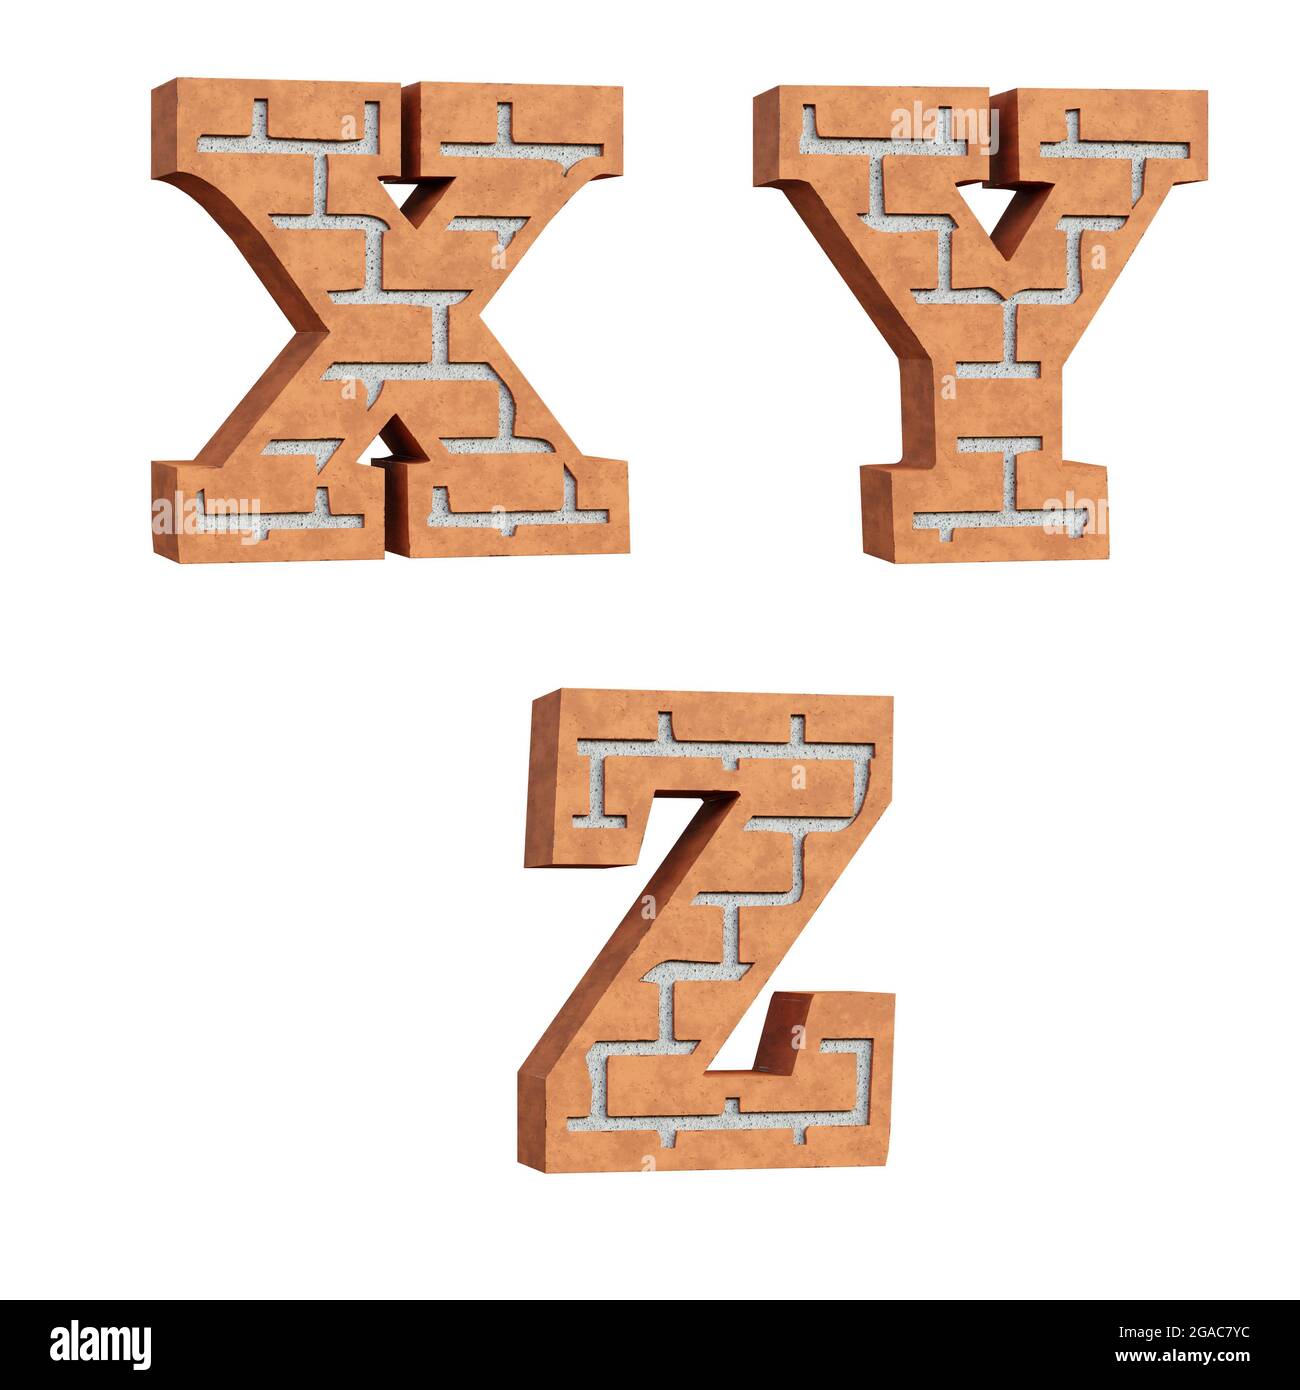 3D-Rendering des roten Ziegelalphabets - Buchstaben X-Z Stockfoto